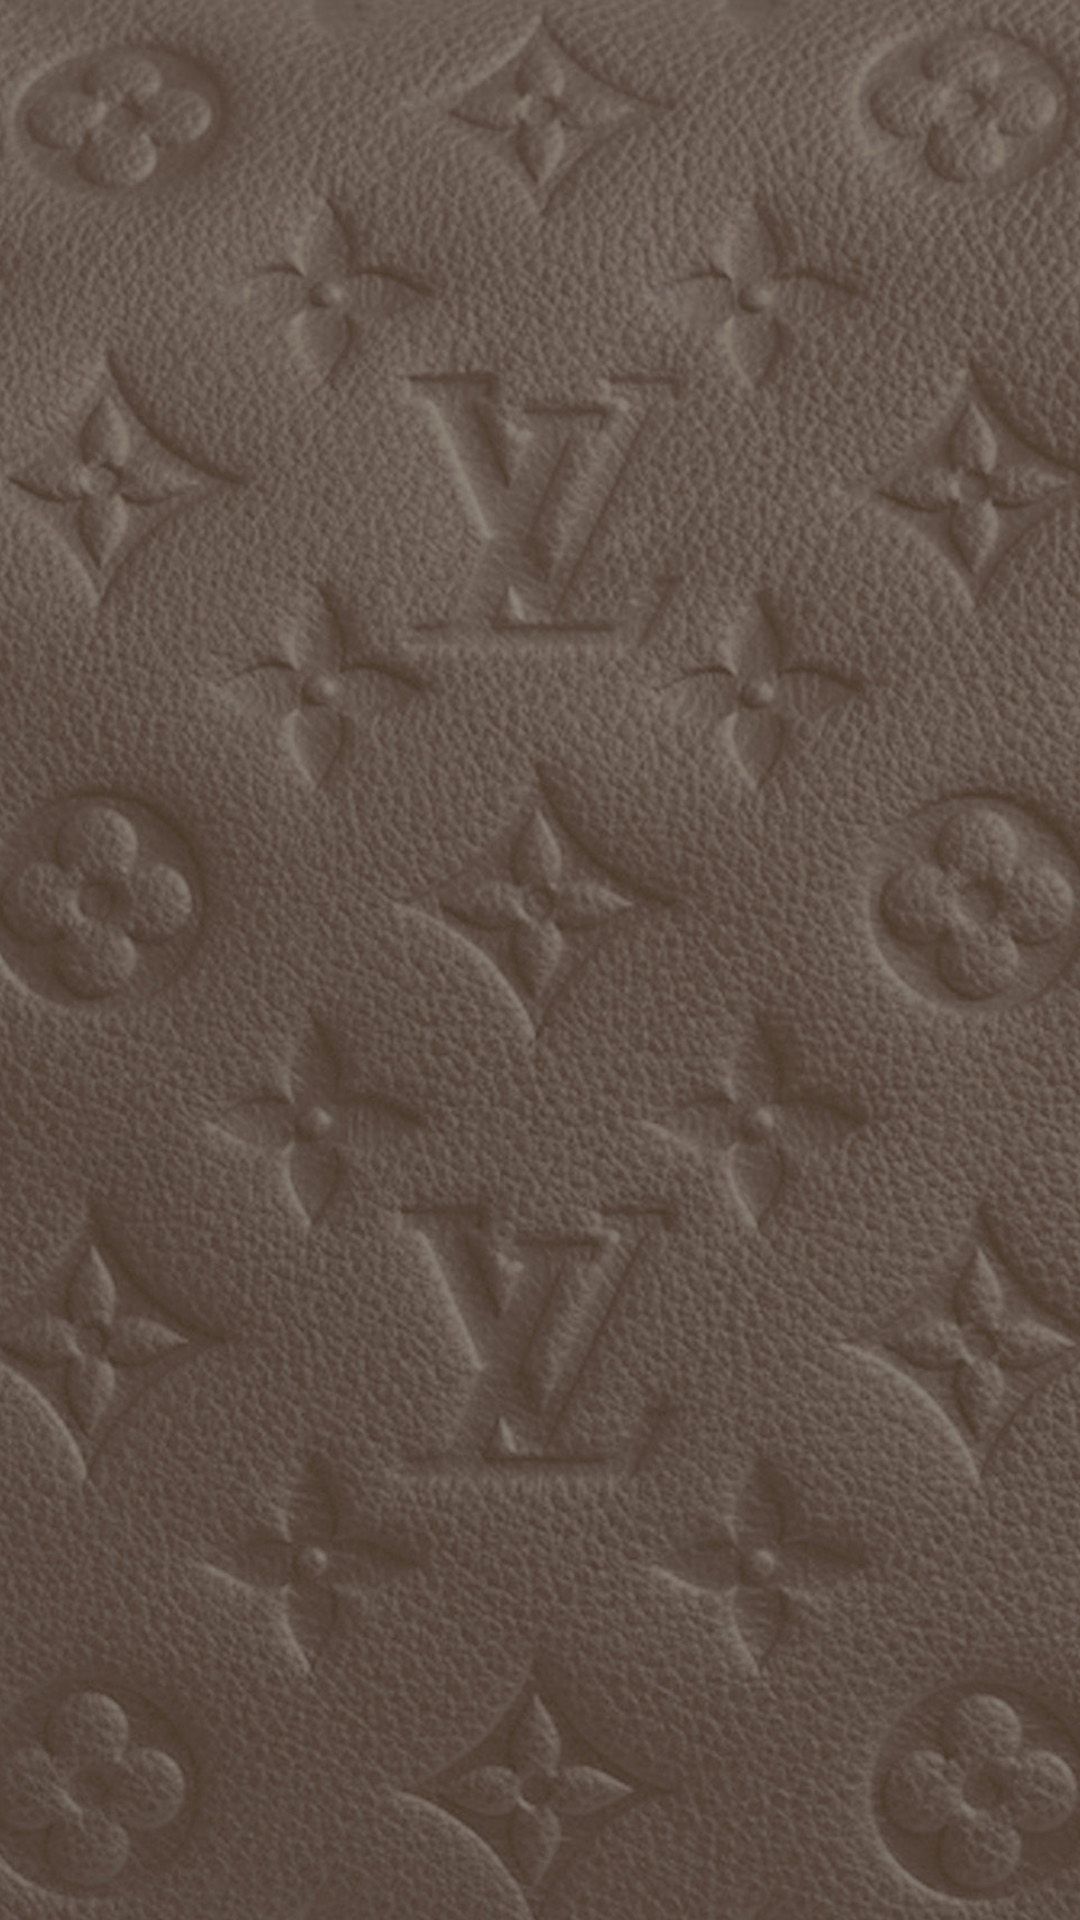 Fonds d&Louis Vuitton : tous les Louis Vuitton HD wallpaper